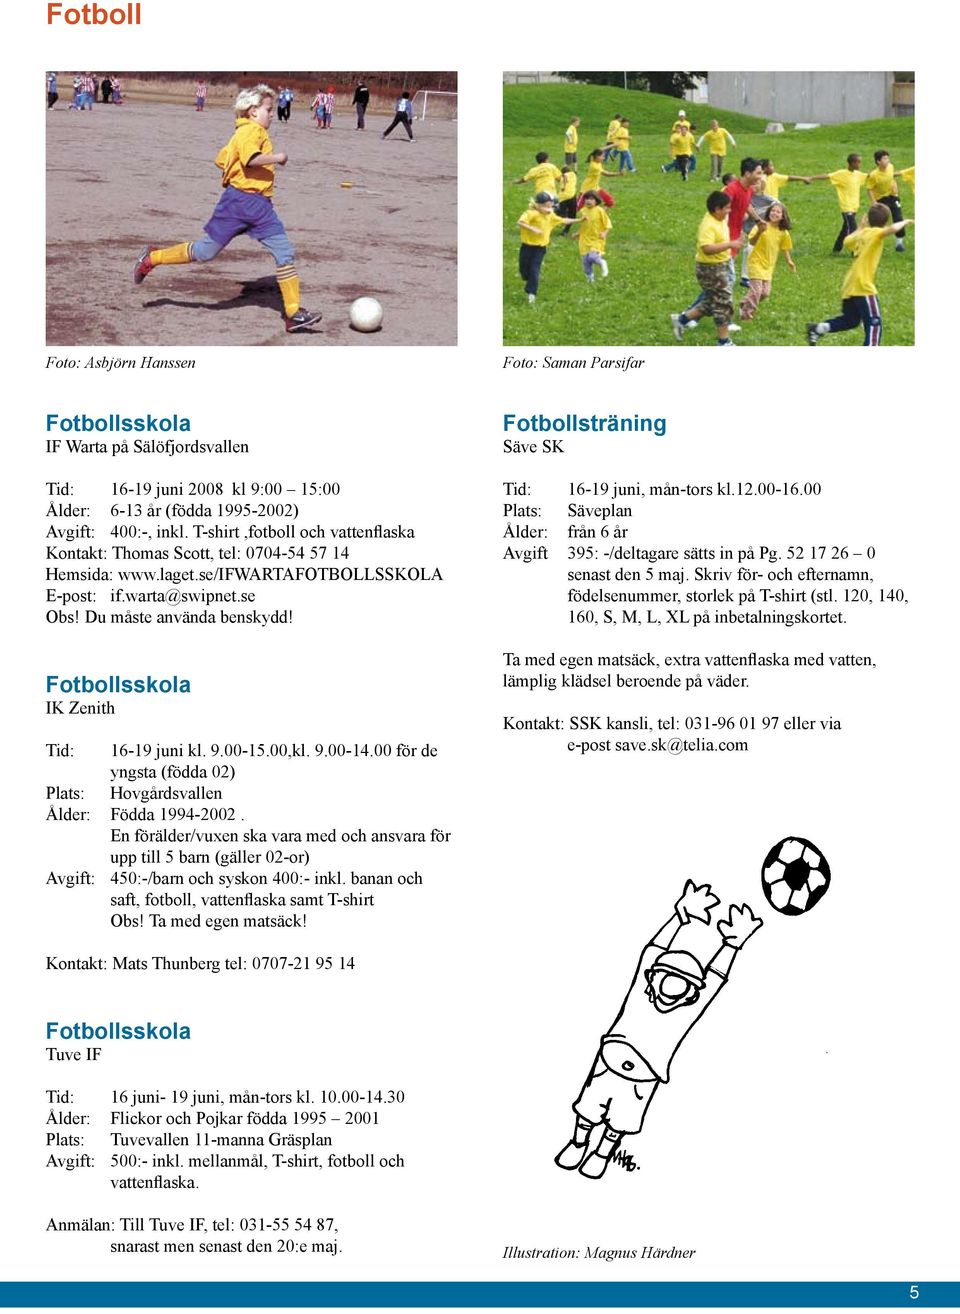 Fotbollsskola IK Zenith Tid: 16-19 juni kl. 9.00-15.00,kl. 9.00-14.00 för de yngsta (födda 02) Plats: Hovgårdsvallen Ålder: Födda 1994-2002.